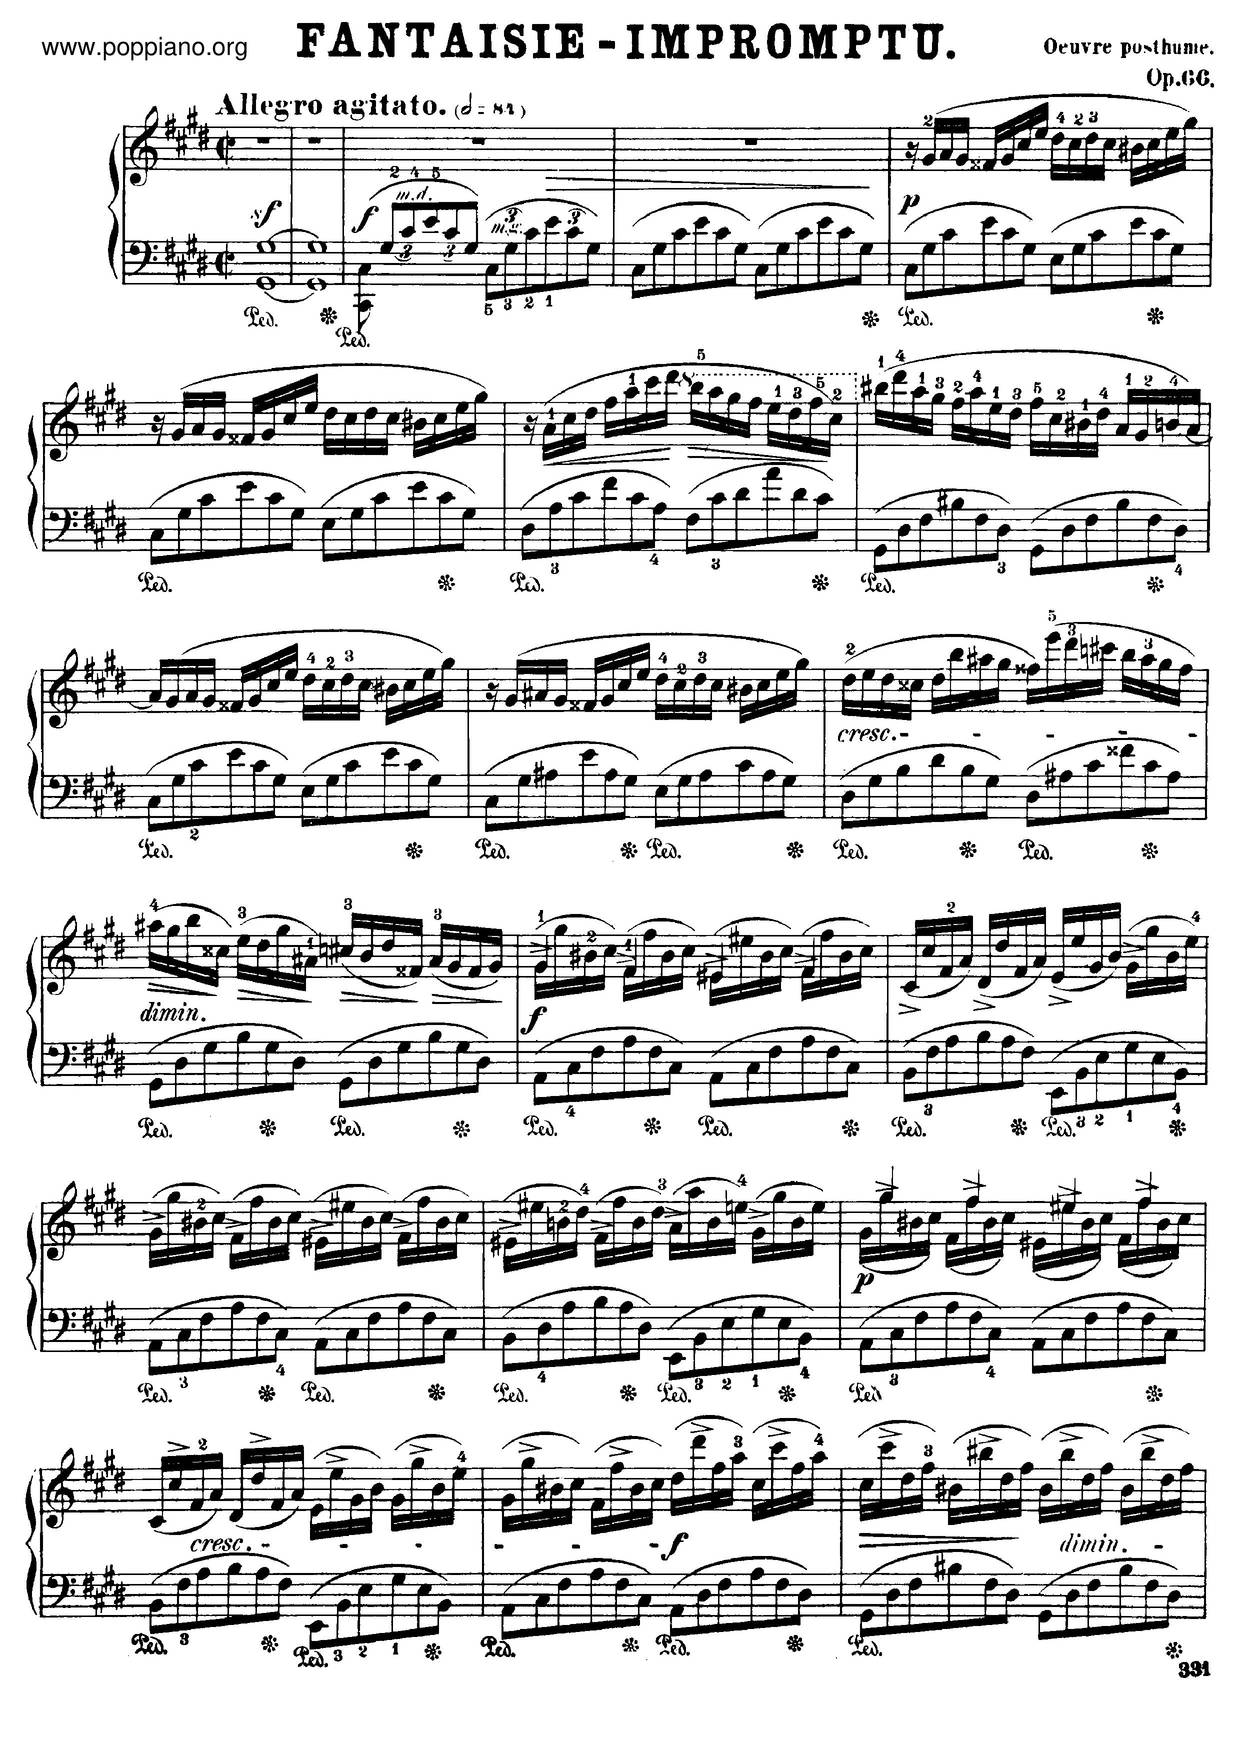 Fantasie Impromptu Op. 66 即興幻想曲 Score